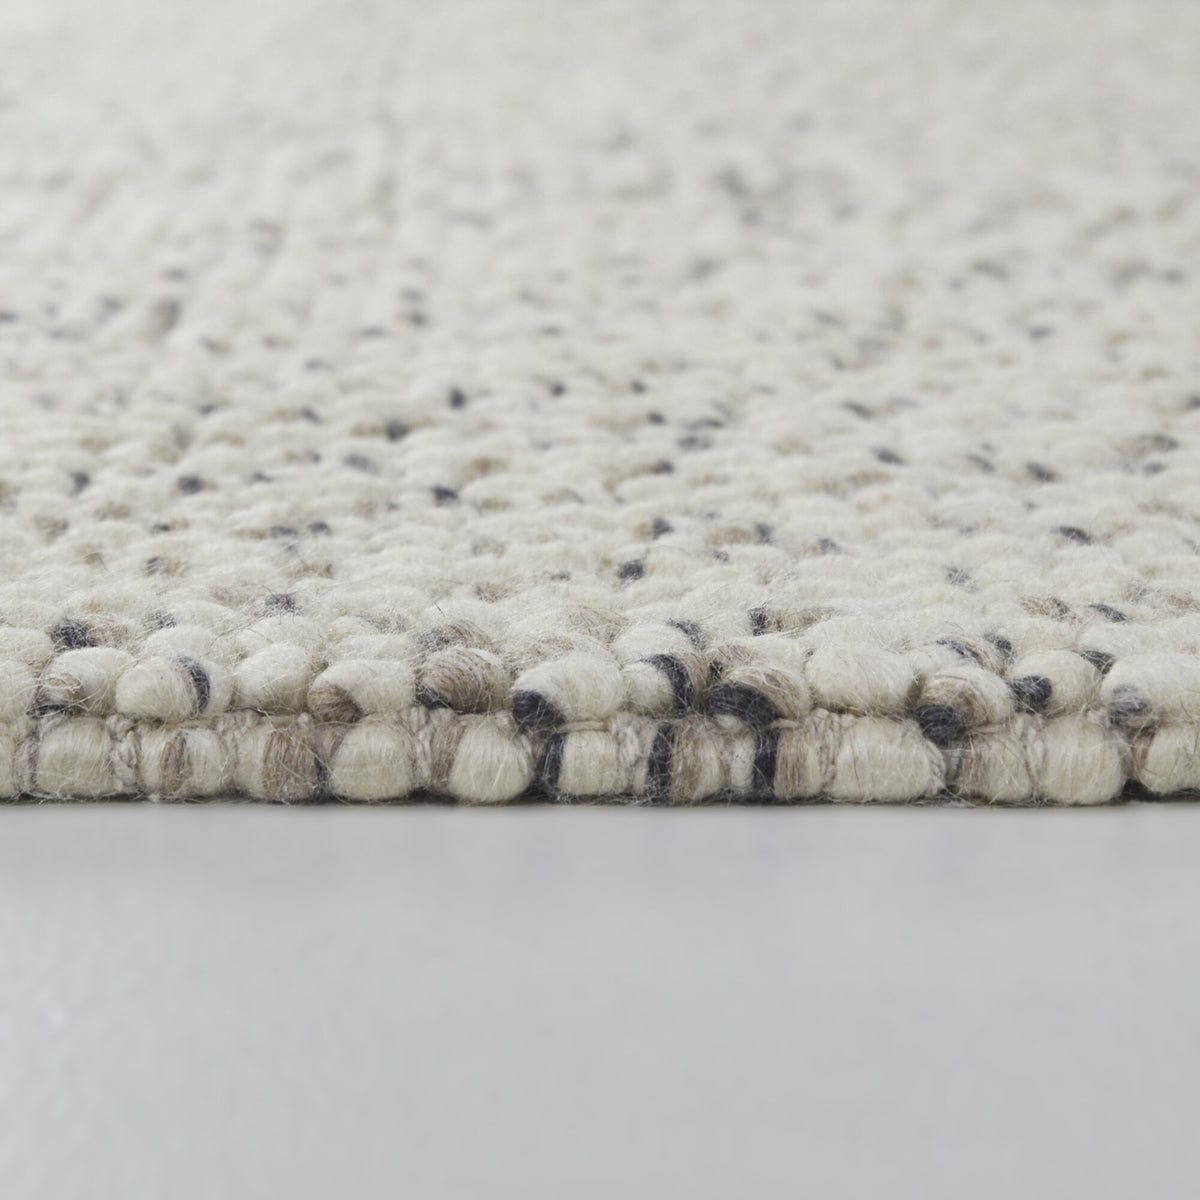 Dutton Soft Textured Wool Area Rug